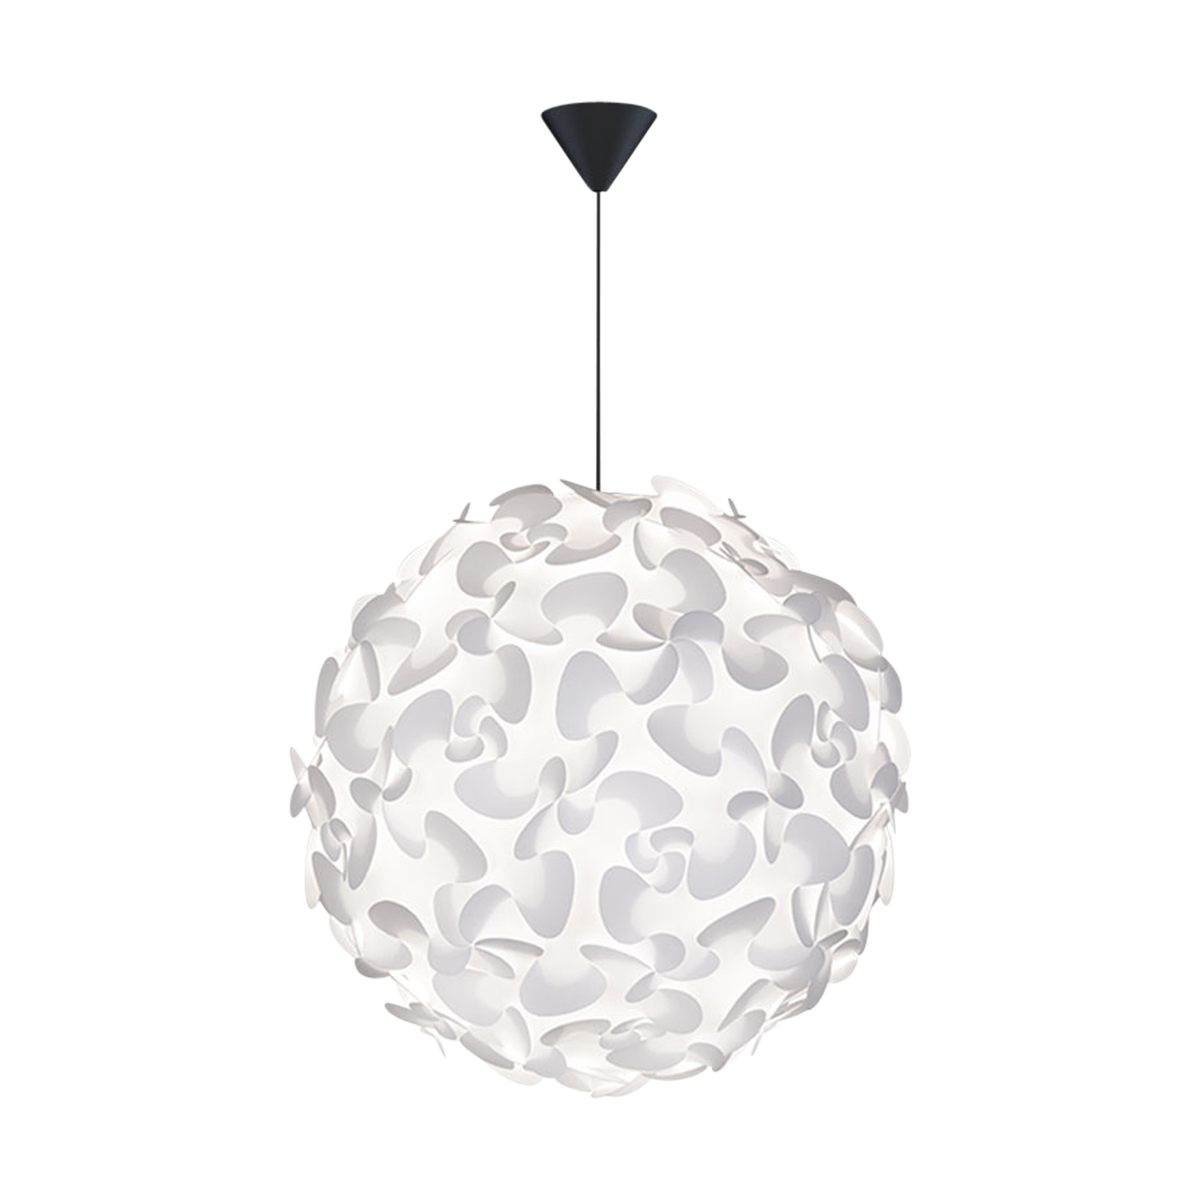 Lora Medium hanglamp white - met koordset zwart - Ø 45 cm